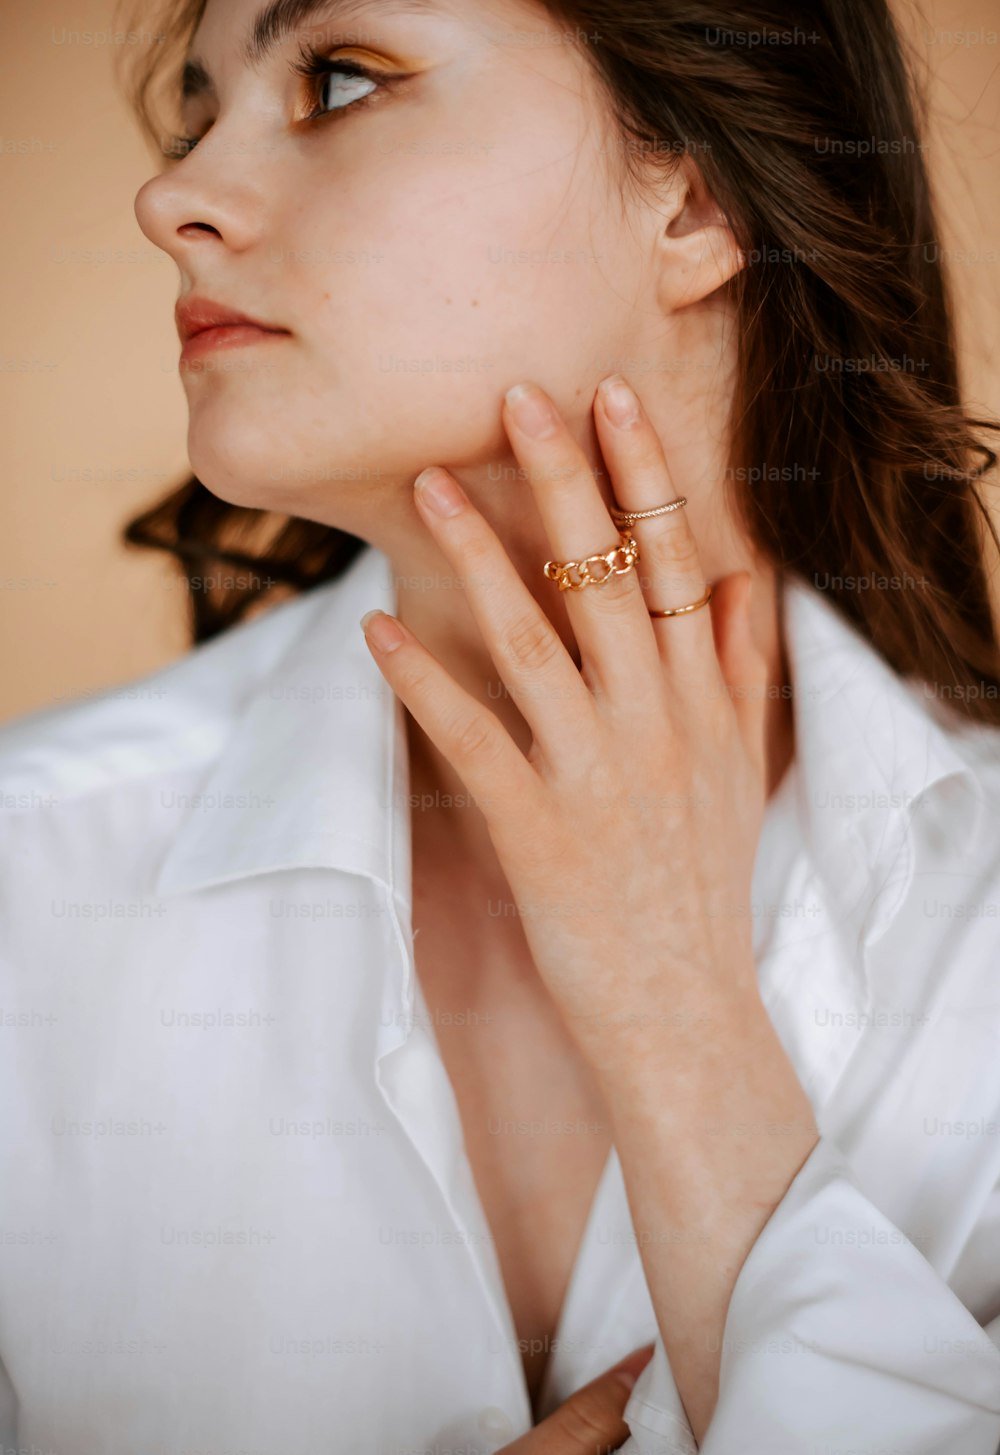 Eine Frau trägt ein weißes Hemd und einen goldenen Ring